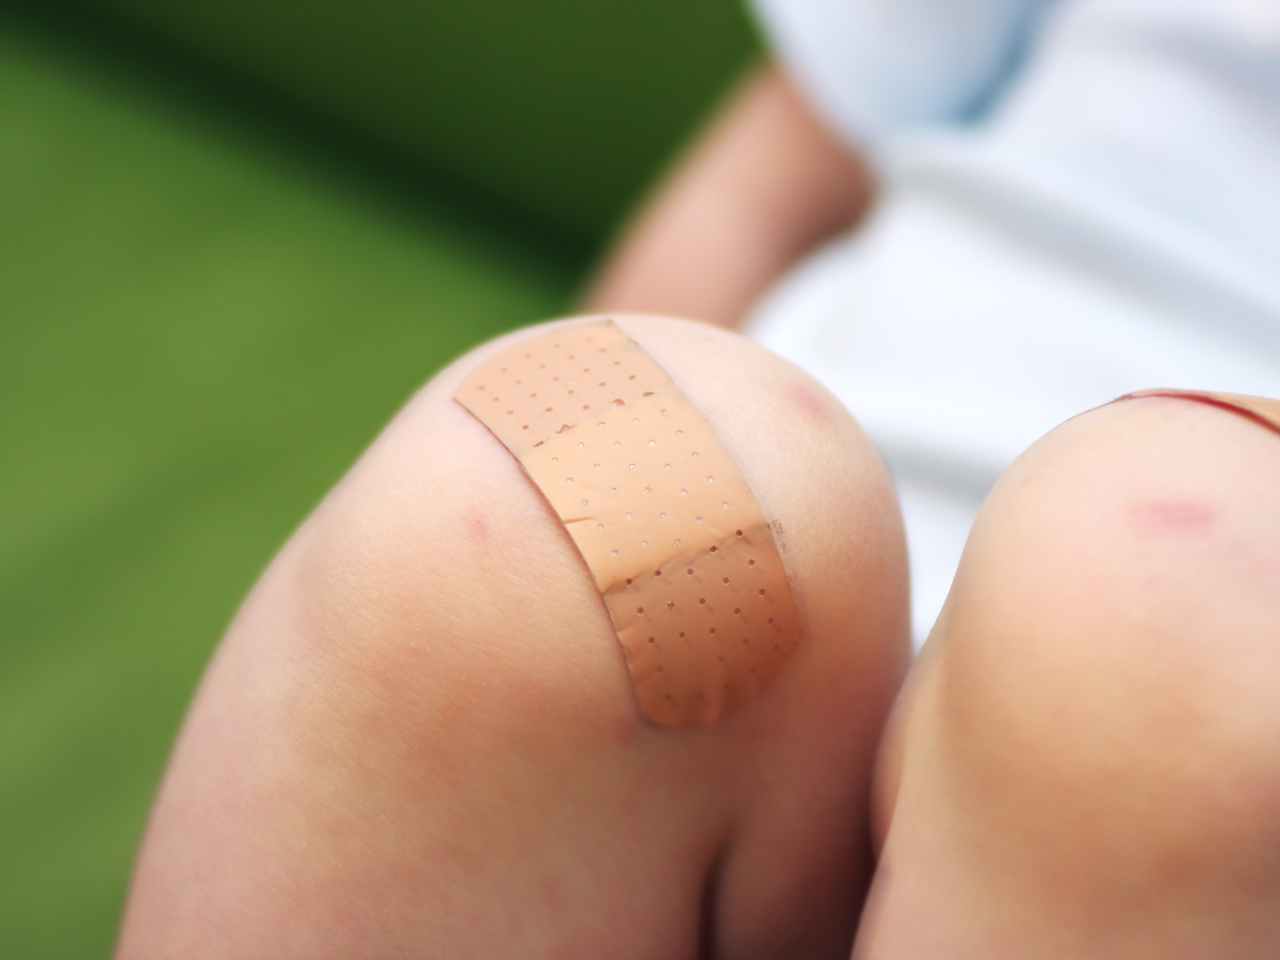 plaster or bandaid on knee